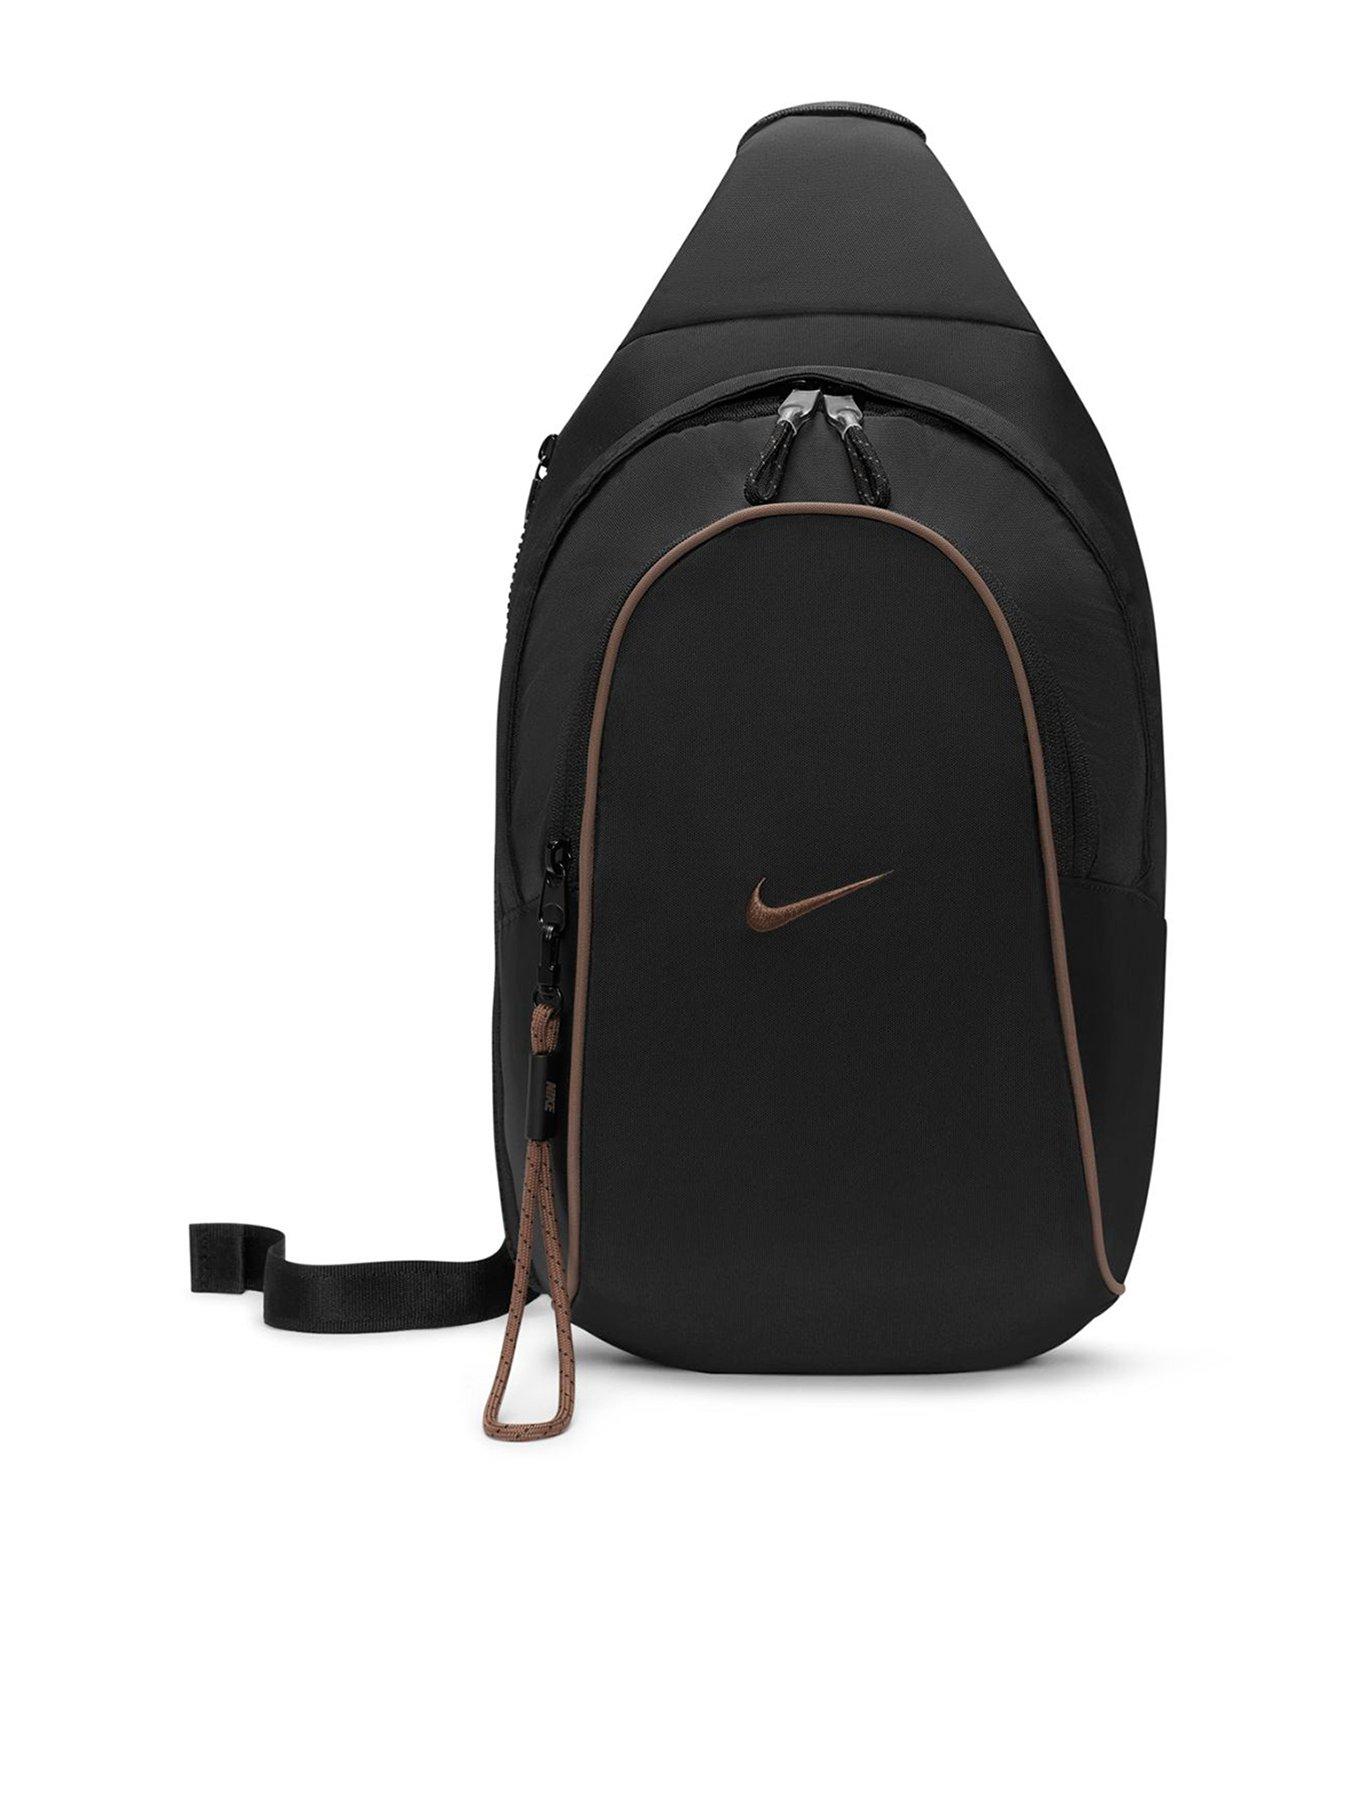 Nike Backpacks | Nike Bags Rucksacks | Very.co.uk